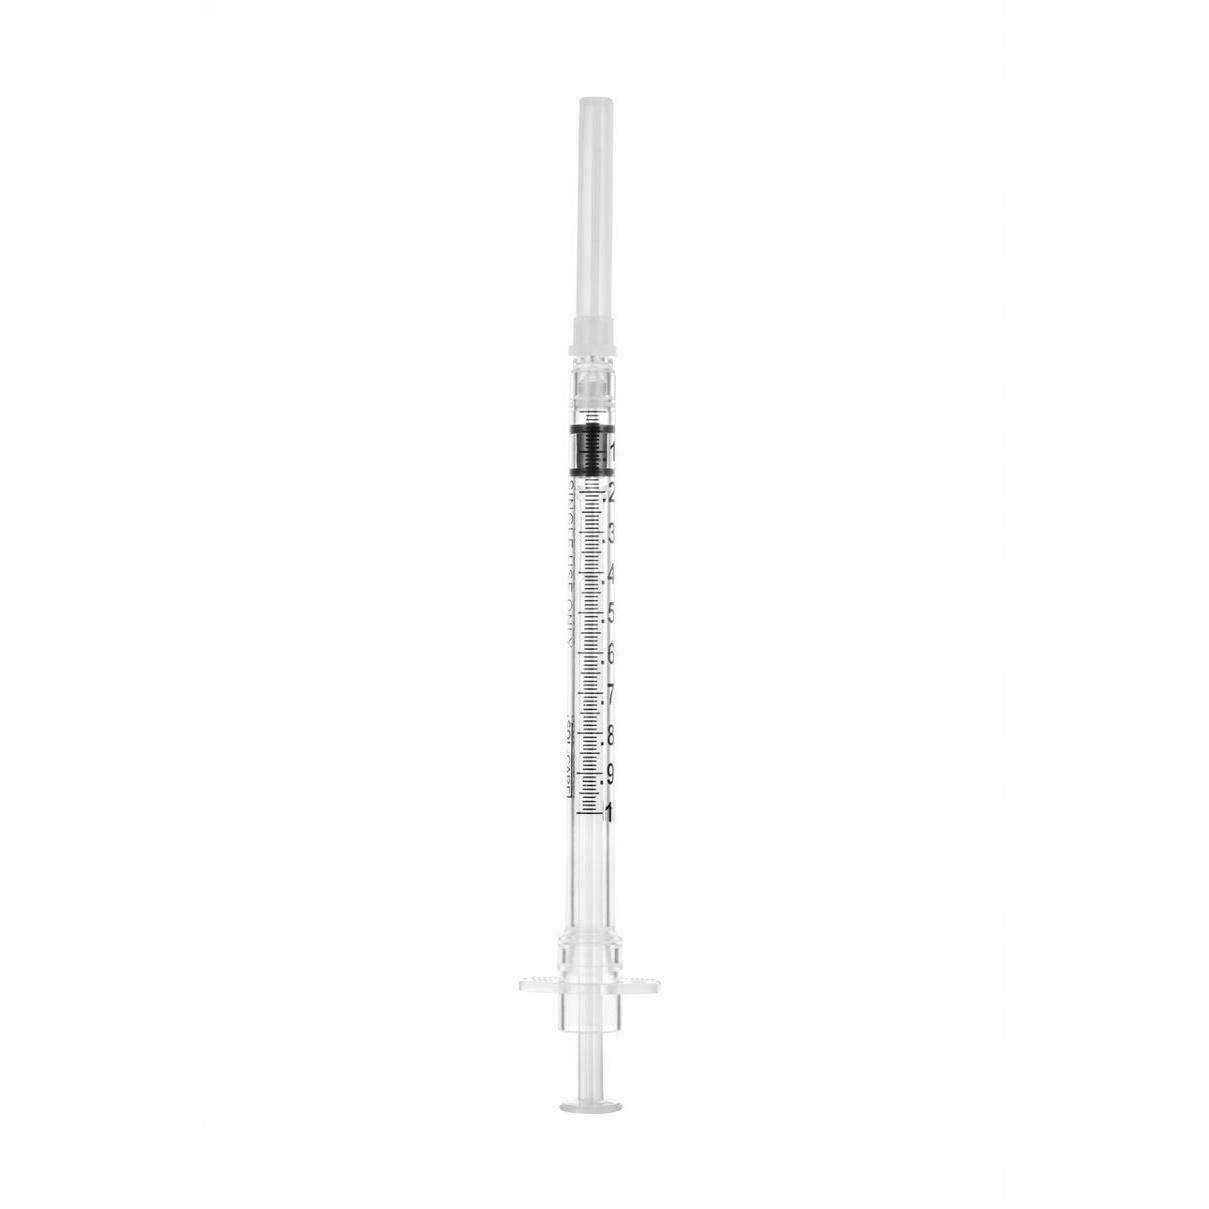 1ml 27g 1/2 inch Sol-Care Safety Syringe with Fixed Needle - UKMEDI